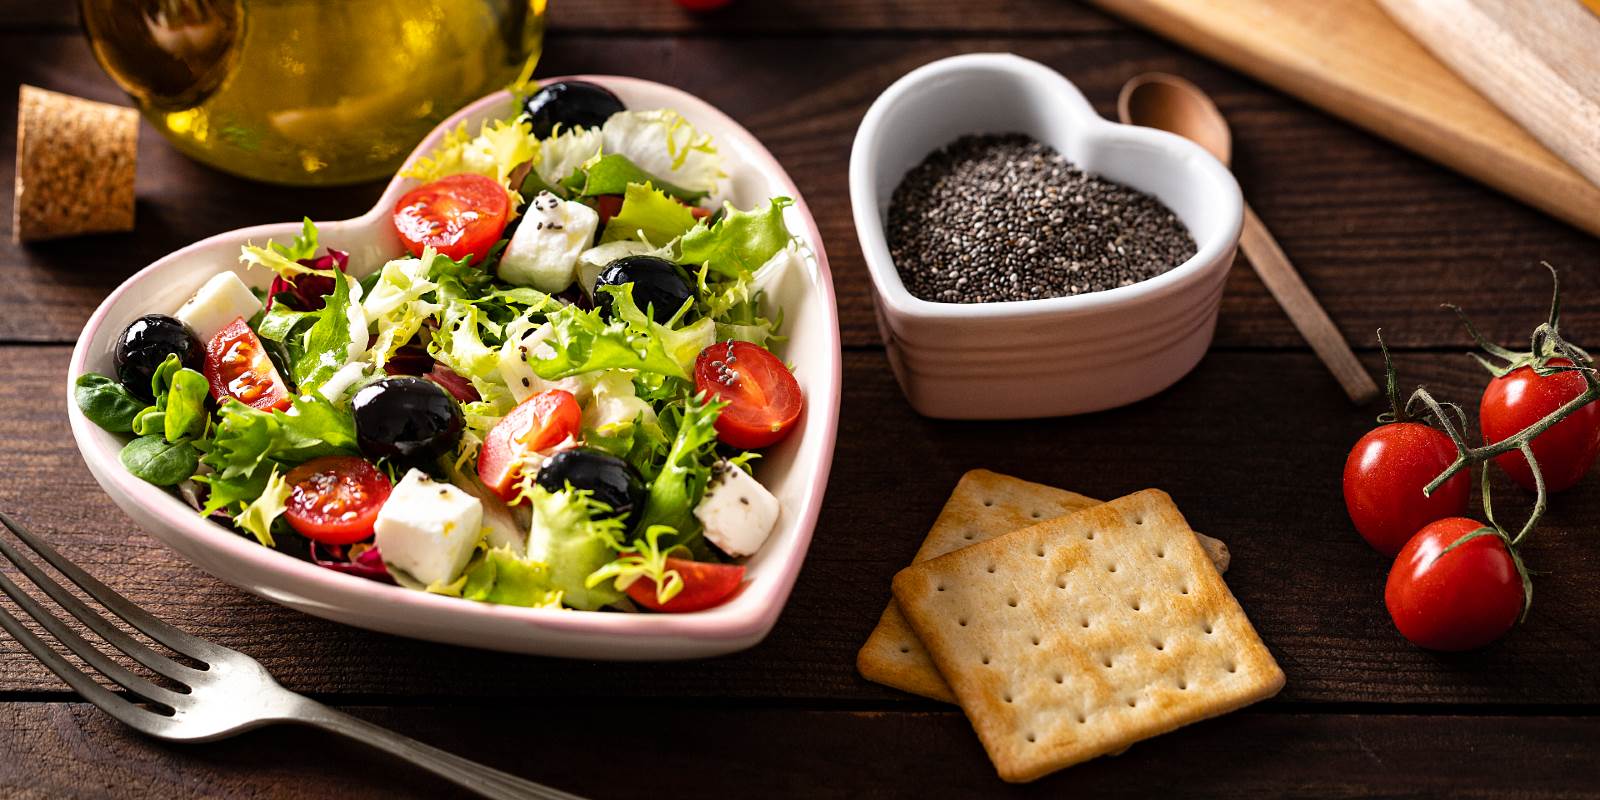 Salat in herzförmigem Teller mit Oliven, Feta, Tomaten und grüner Salat